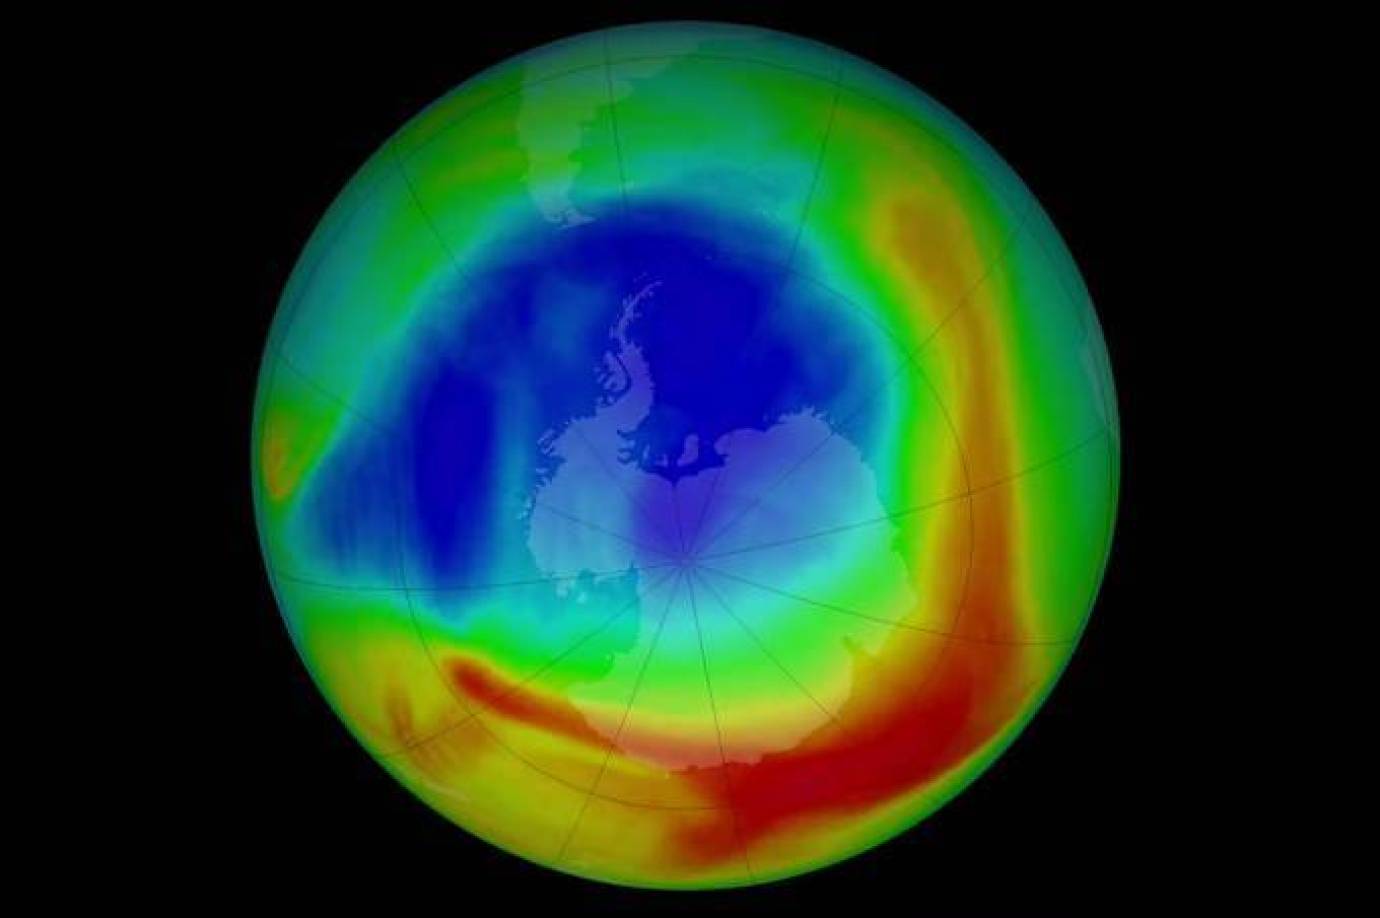  ¡Buenas noticias! La capa de ozono continúa sanándose